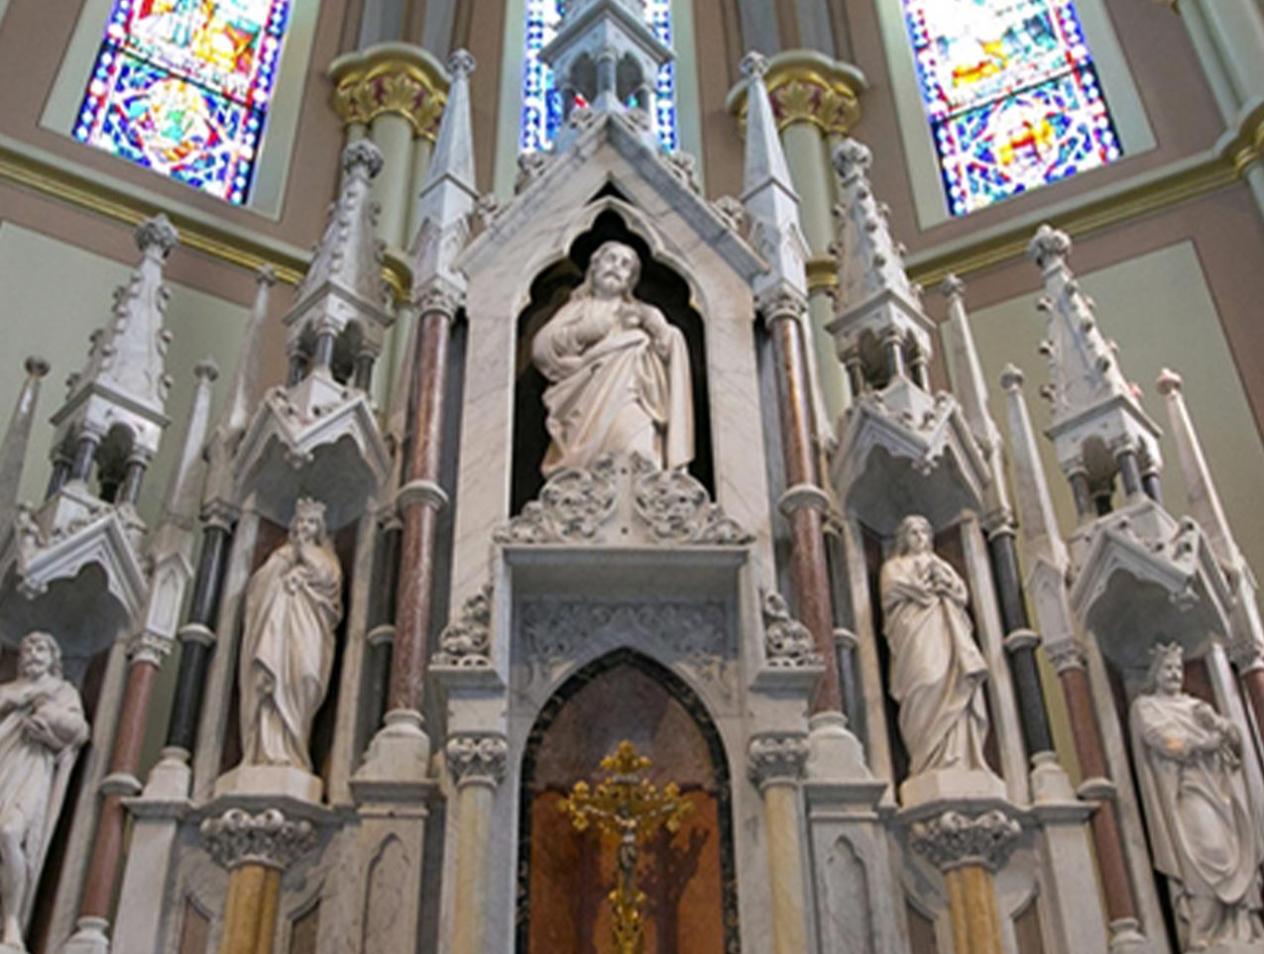 St. John's Altar